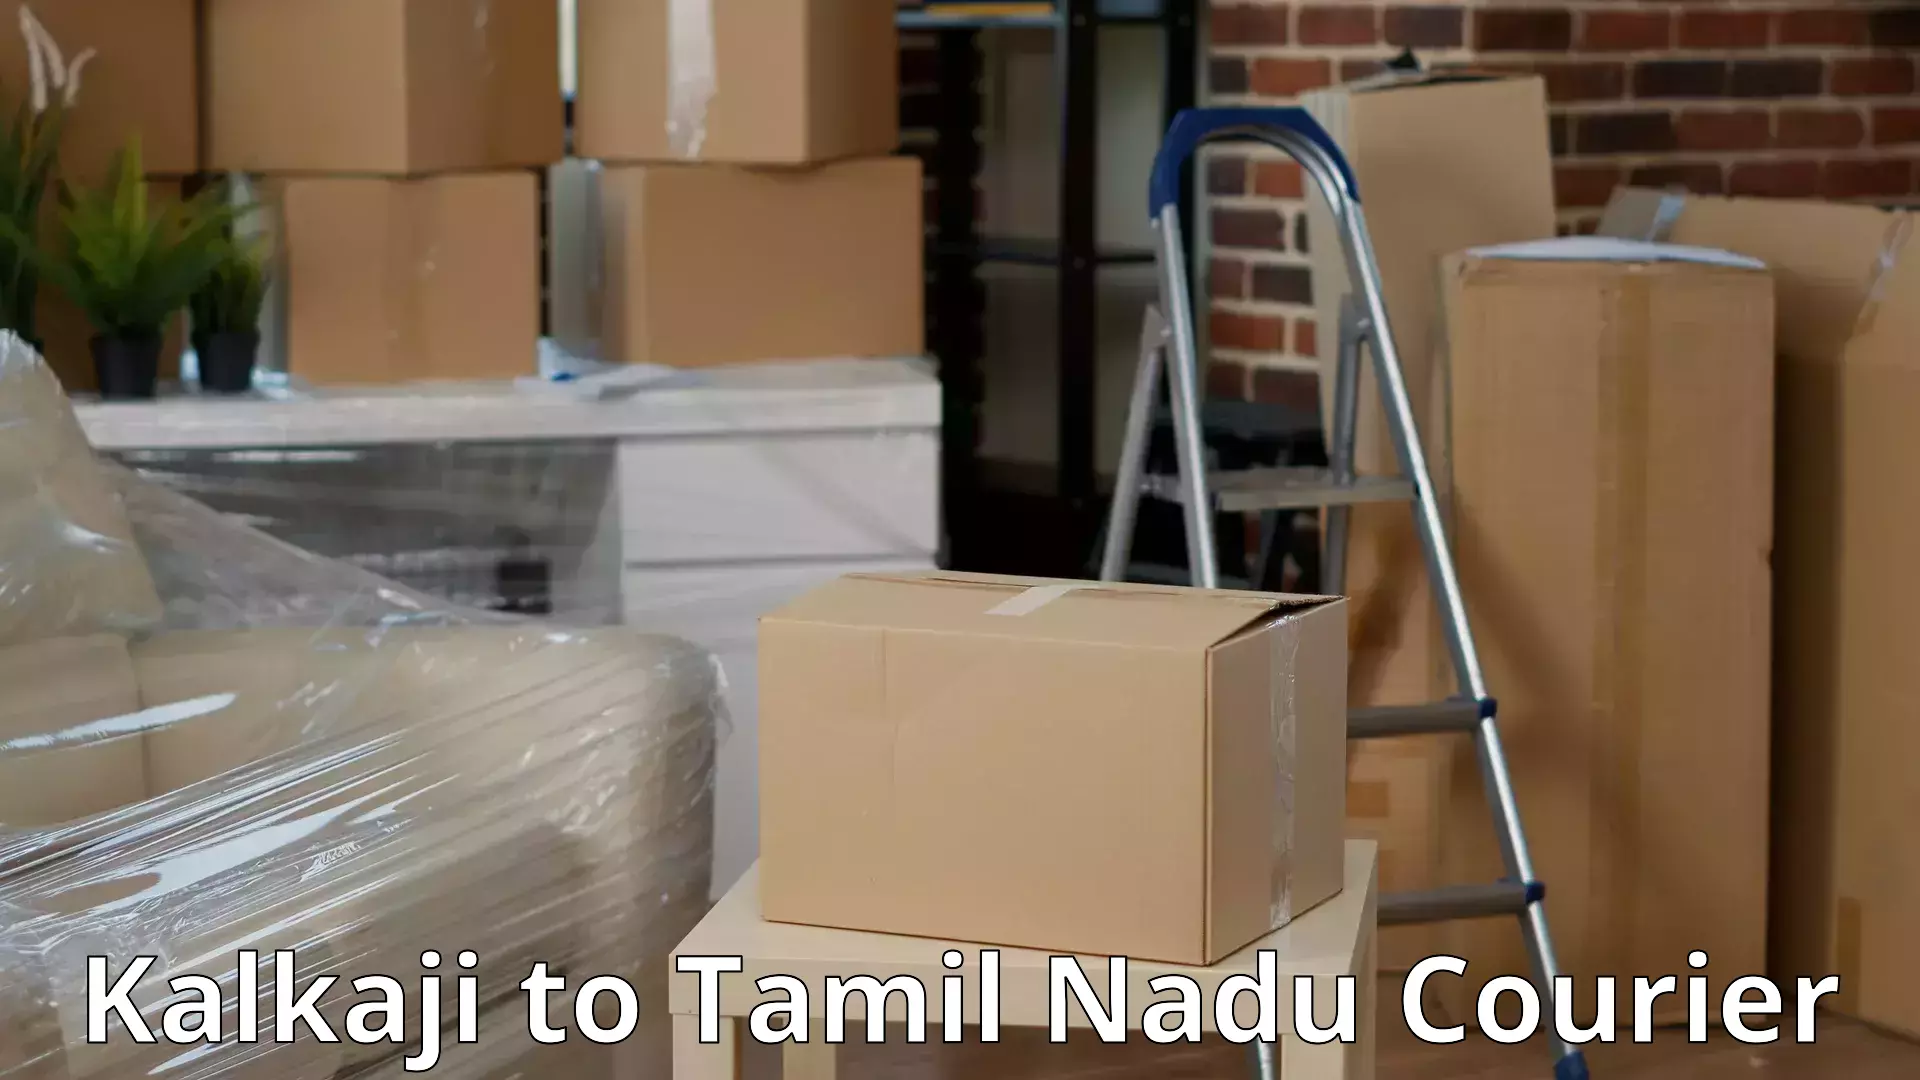 Seamless moving process Kalkaji to Thiruvadanai